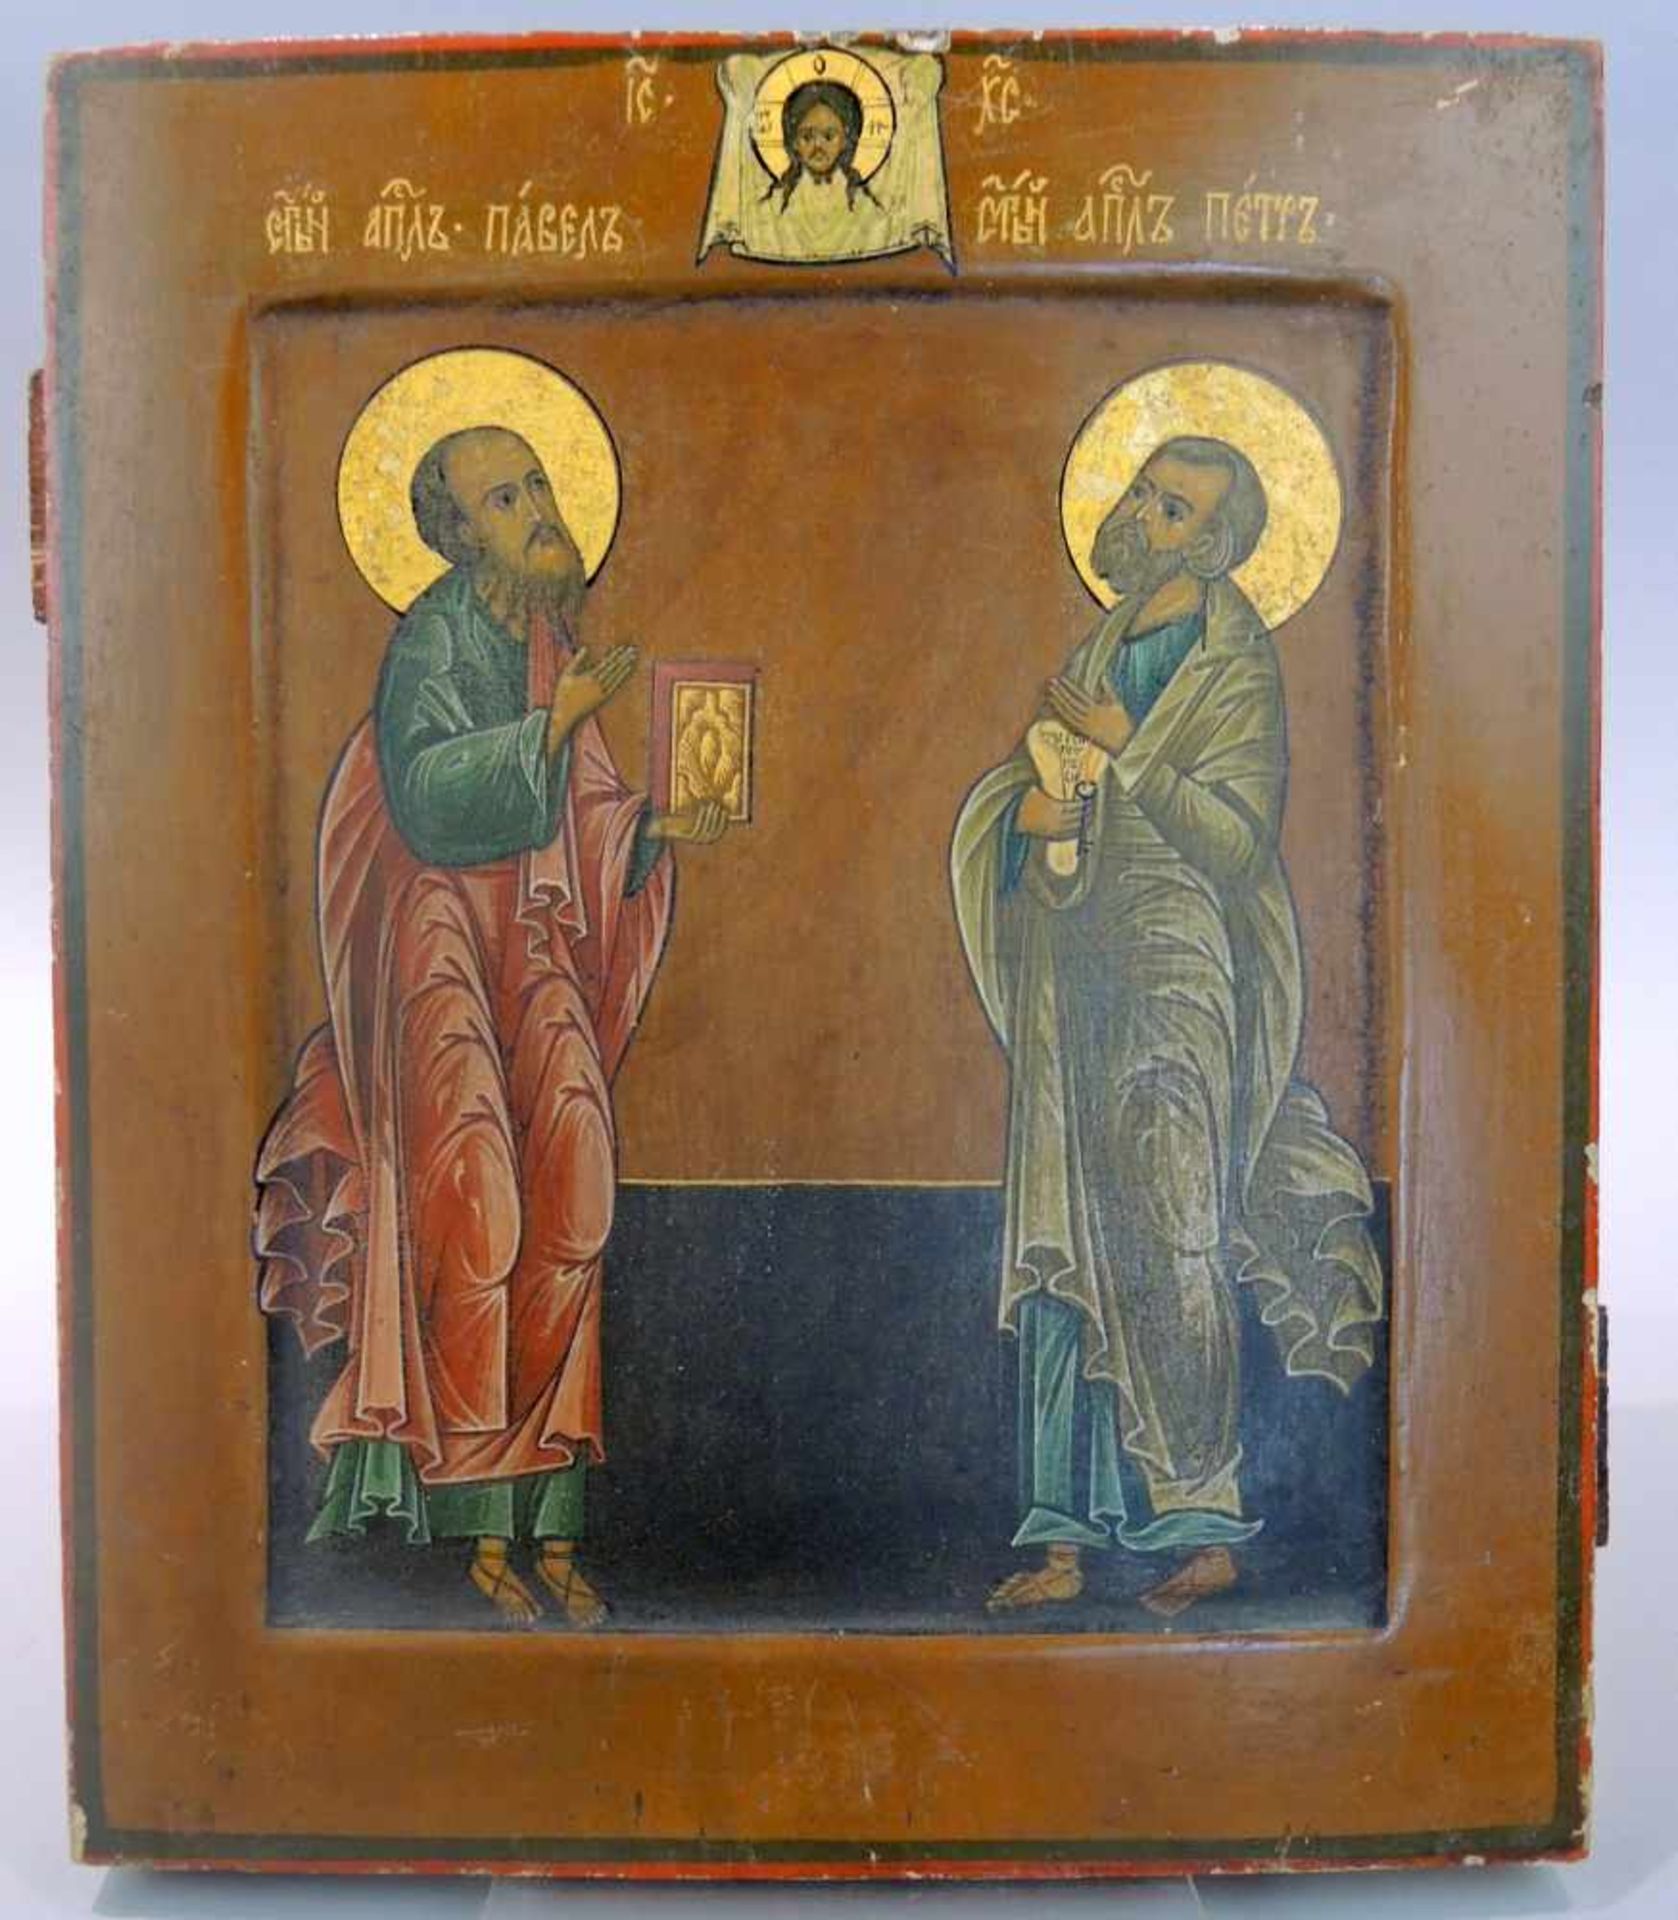 Ikone von Paulus und PetrusTempera/Holz, gold staffiert. Ikone der Apostel Paulus und Petrus mit